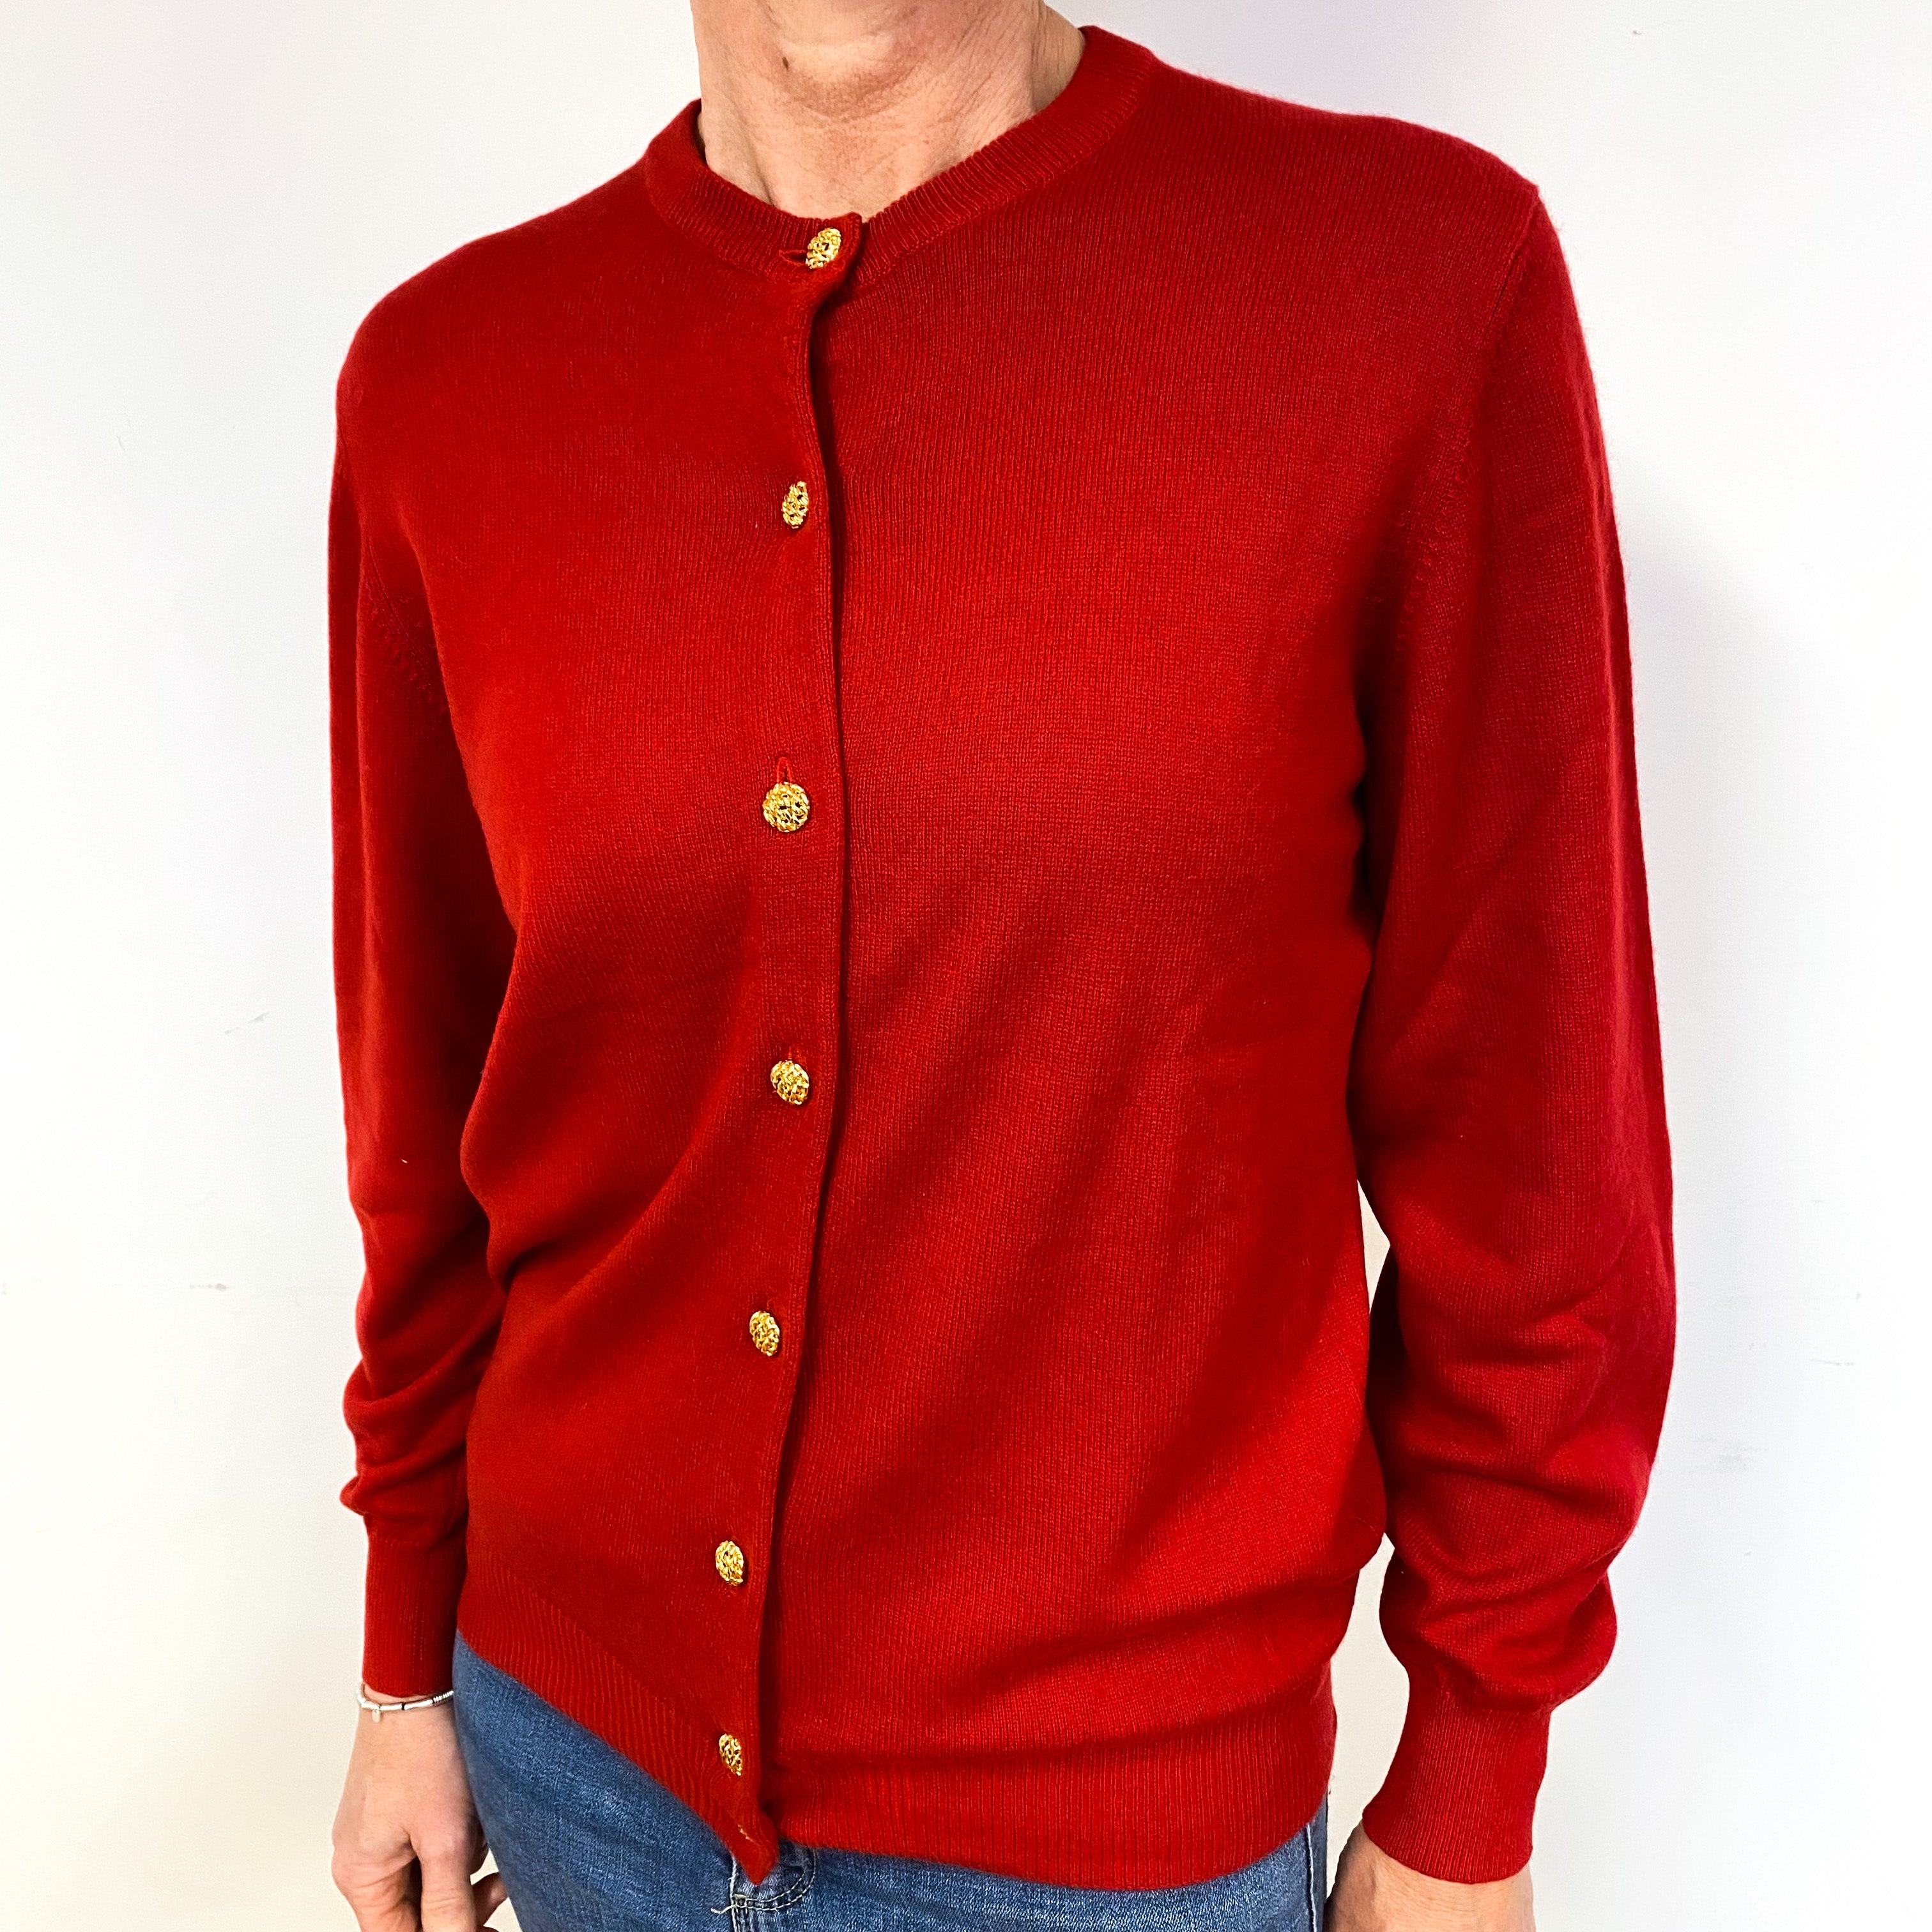 Spanish Red Cashmere Cardigan Medium